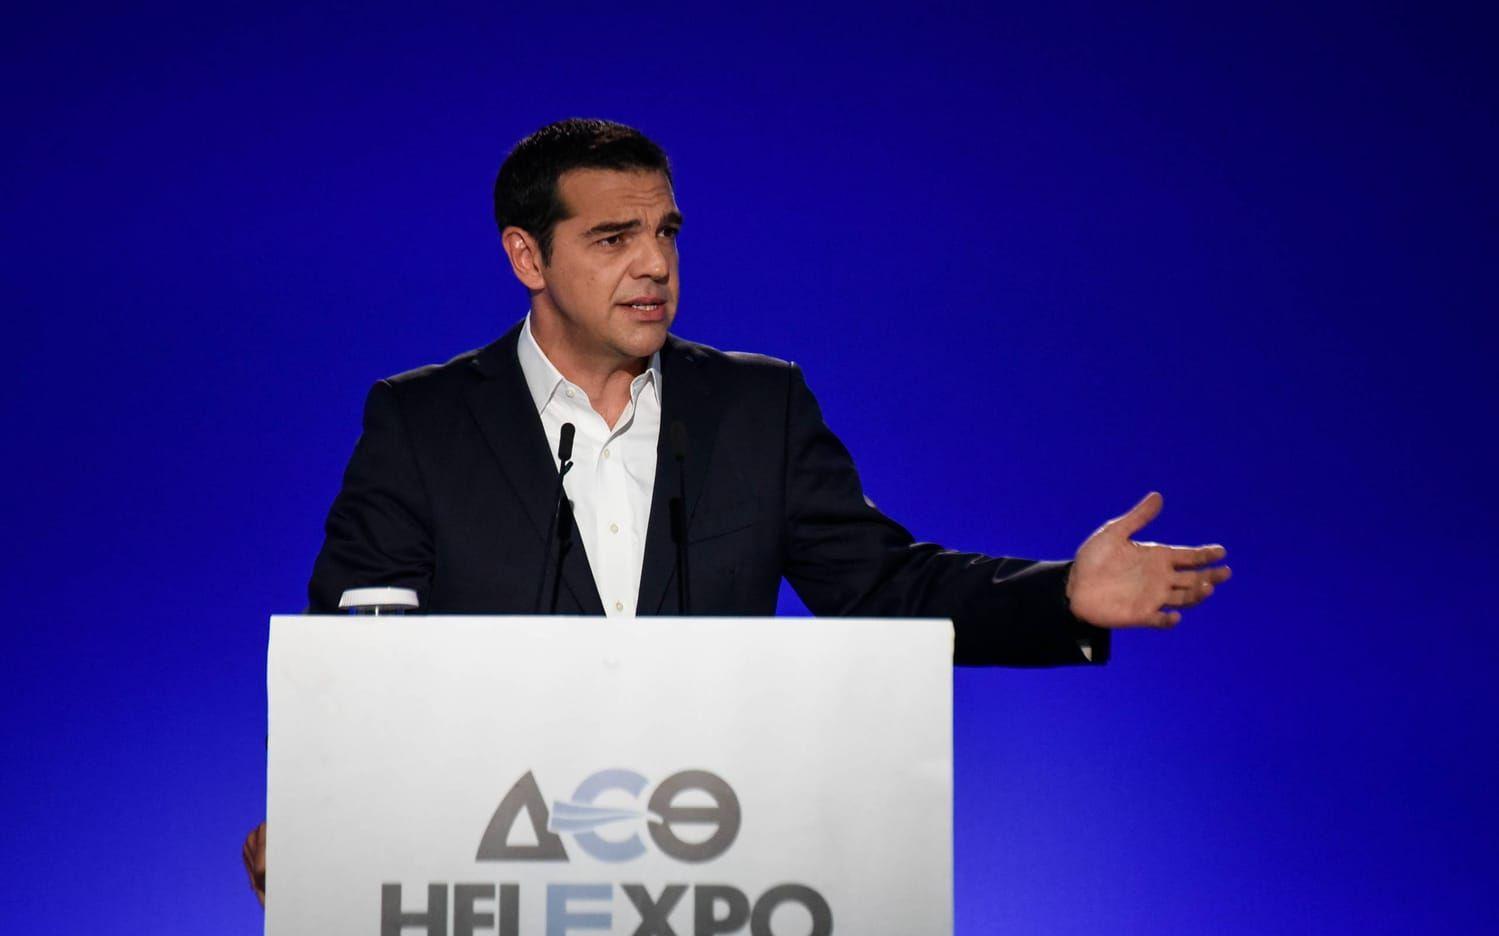 Greklands kris under de senaste åtta åren har väl knappast undgått någon. Alexis Tsipras har lett landet i snart tre år och landet verkar nu sakta men säkert resa sig ur krisen. Han har också stundtals hamnat i konflikt med övriga EU när det gäller skuldsanering och budgetnedskärningar kopplade till landets kris. Nyligen presenterade Alexis Tsipras att 1,4 miljarder euro ska delas ut till 3,4 miljoner fattiga greker inför julen. Pengarna kommer från ett budgetöverskott till följd av budgetnedskärningar och höjda skatter. Bild: AP Photo/Giannis Papanikos